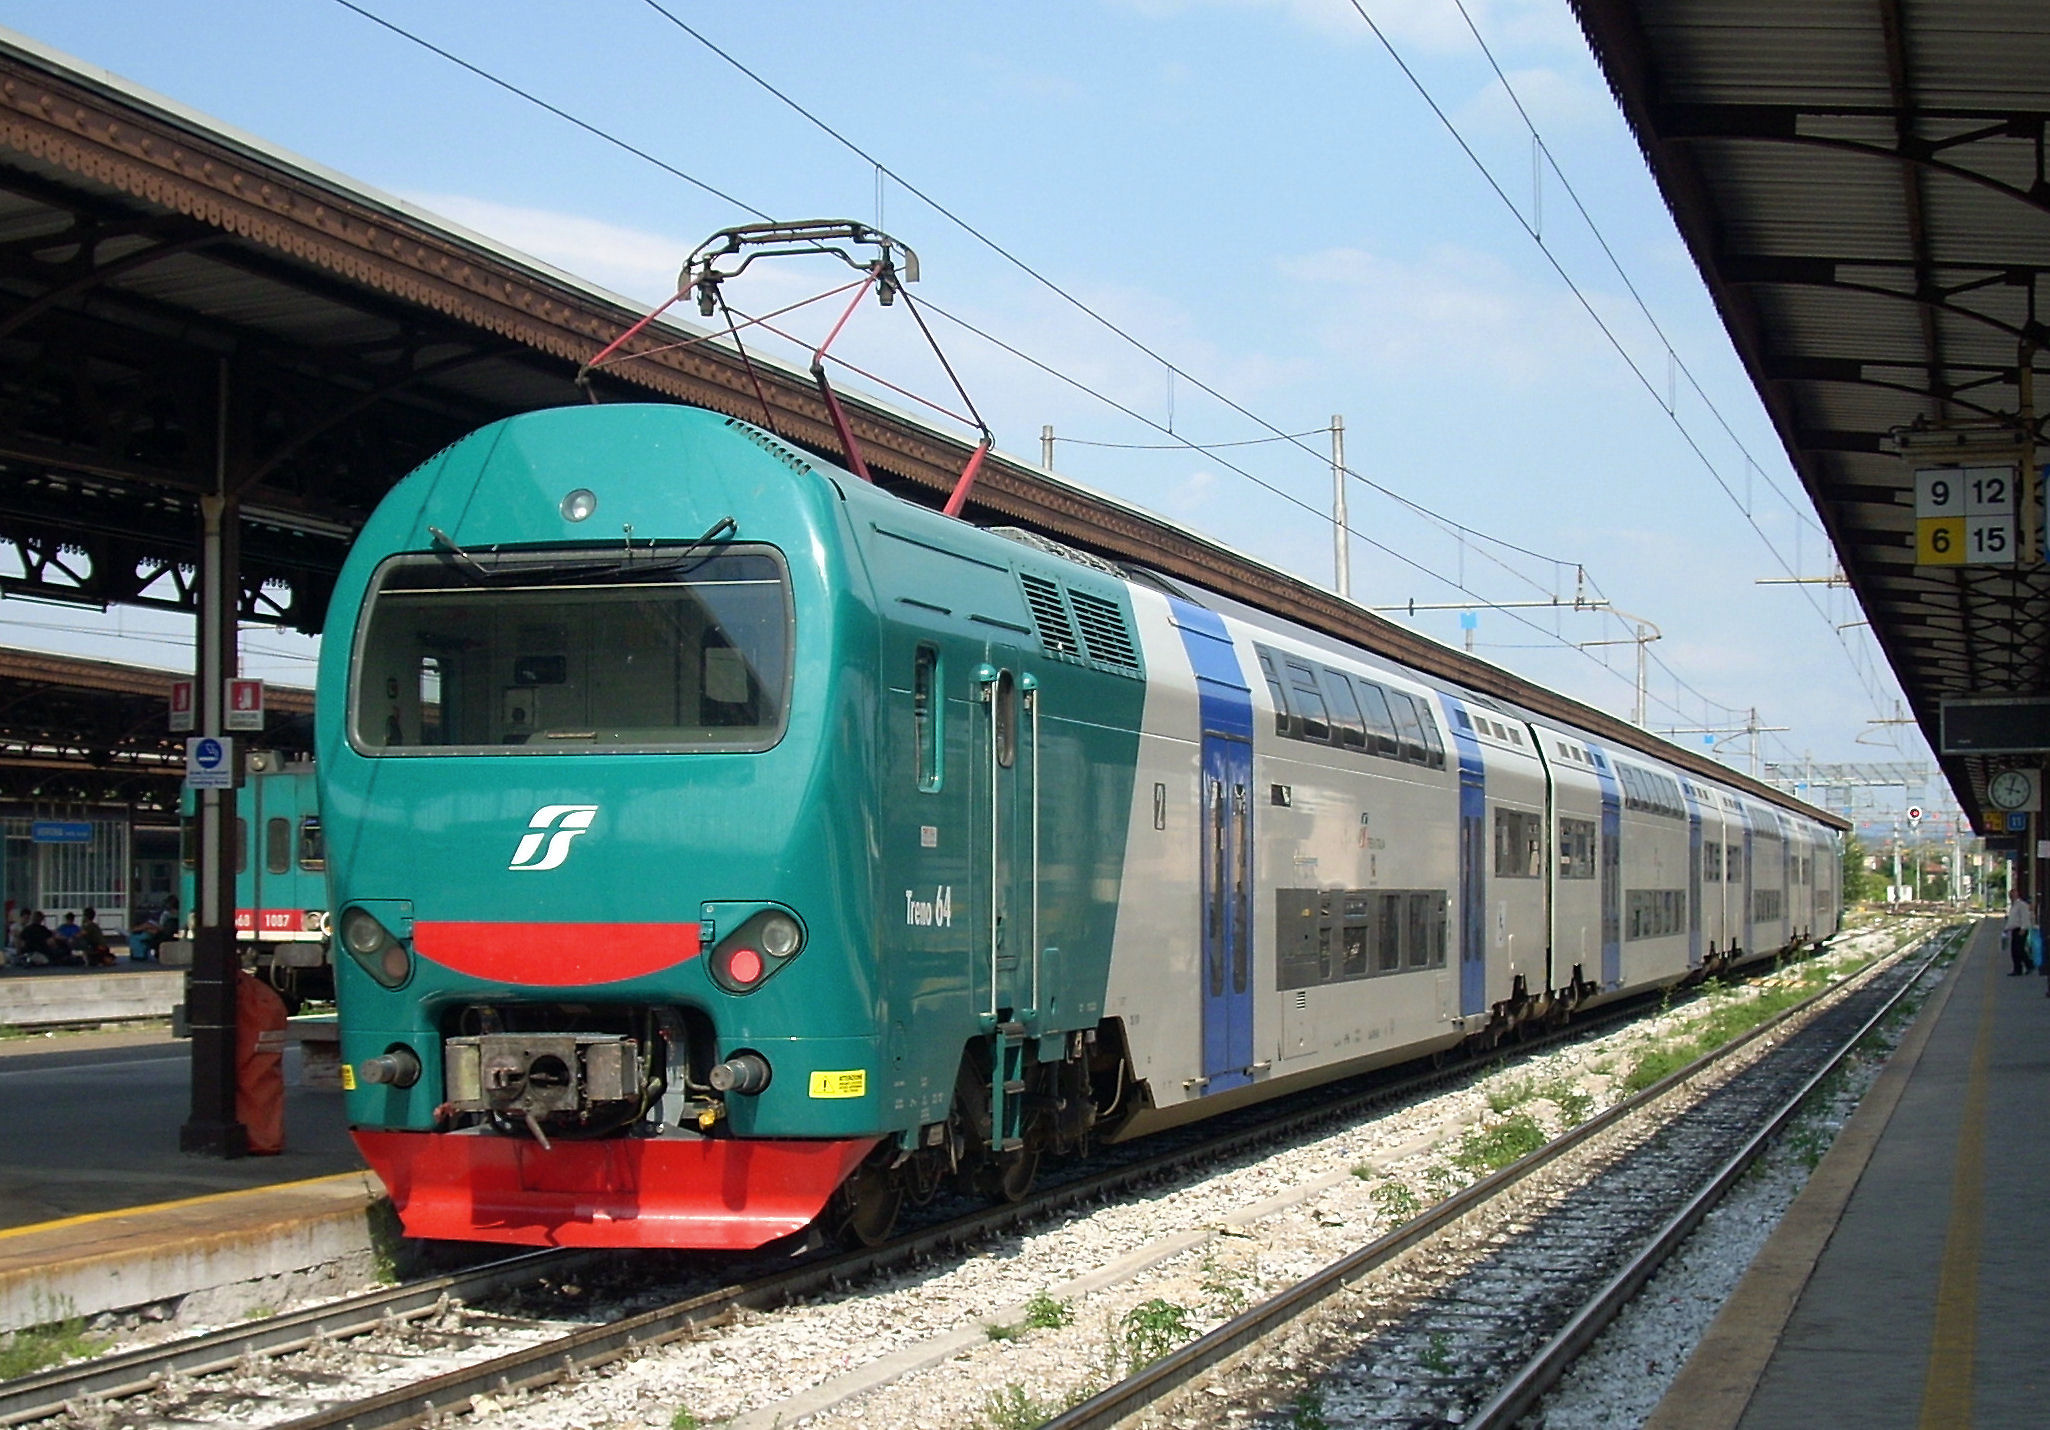 TROFARELLO – Proseguono anche a Ferragosto i lavori sulla linea ferroviaria per il mare